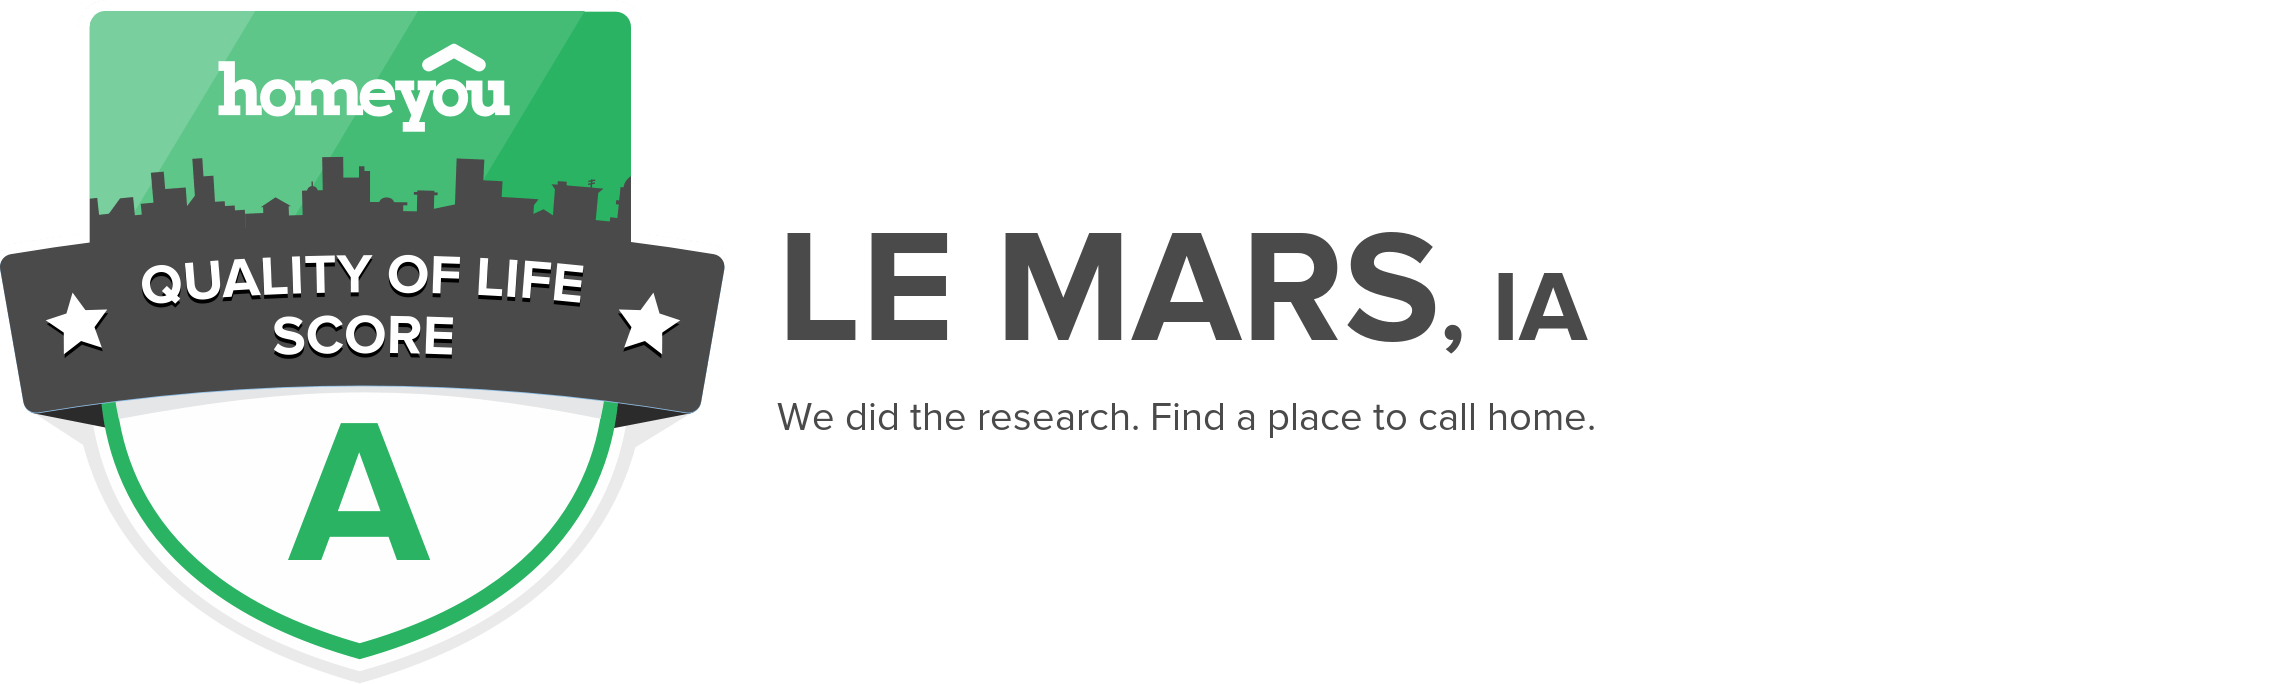 Le Mars, IA